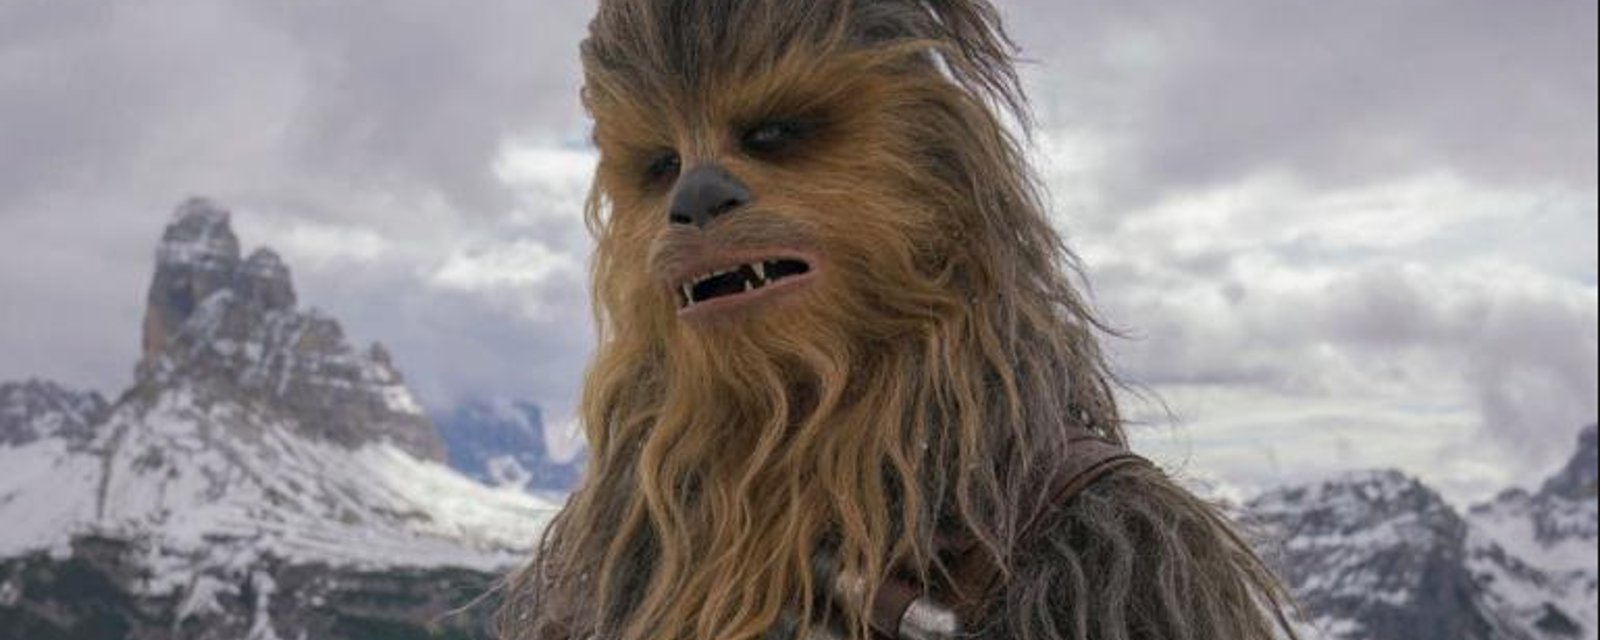 DERNIÈRE HEURE: L'acteur qui jouait Chewbacca dans Star Wars est décédé